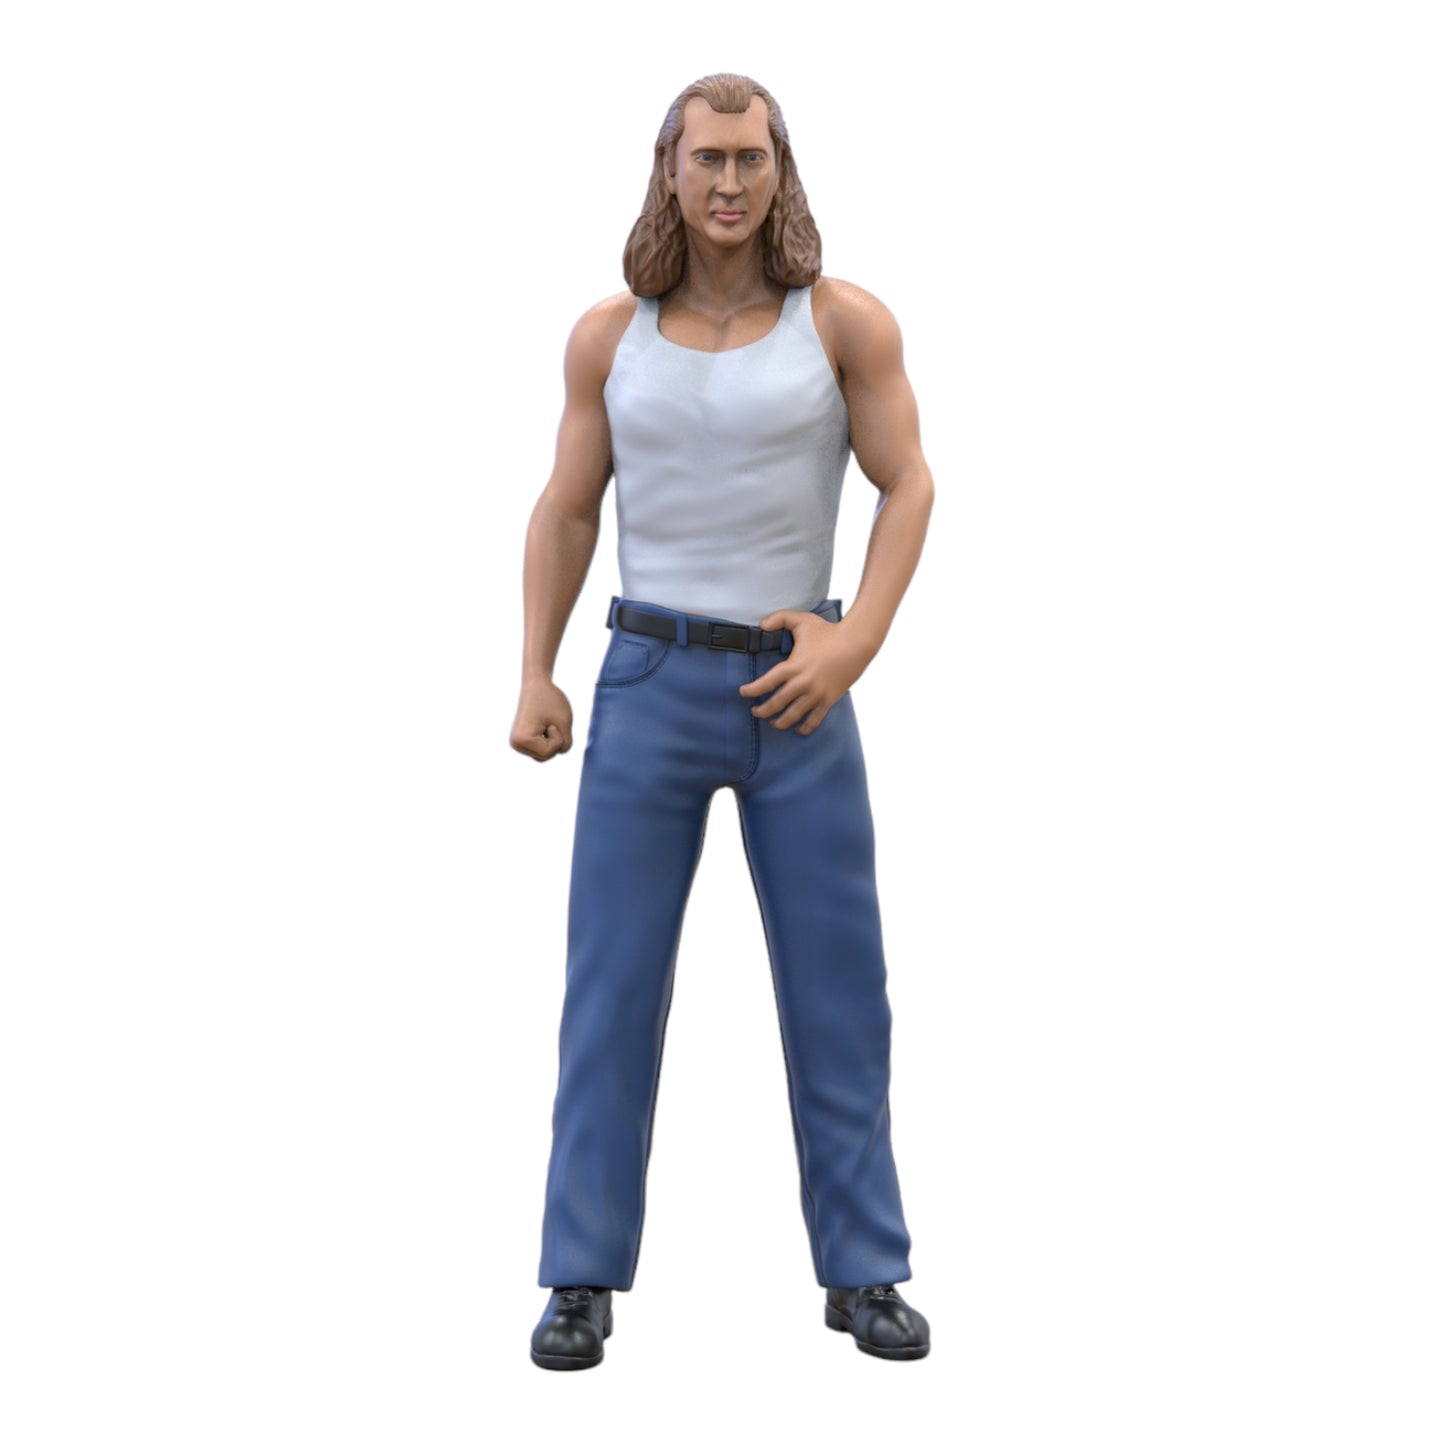 Produktfoto Diorama und Modellbau Miniatur Figur: Mann in Unterhemd